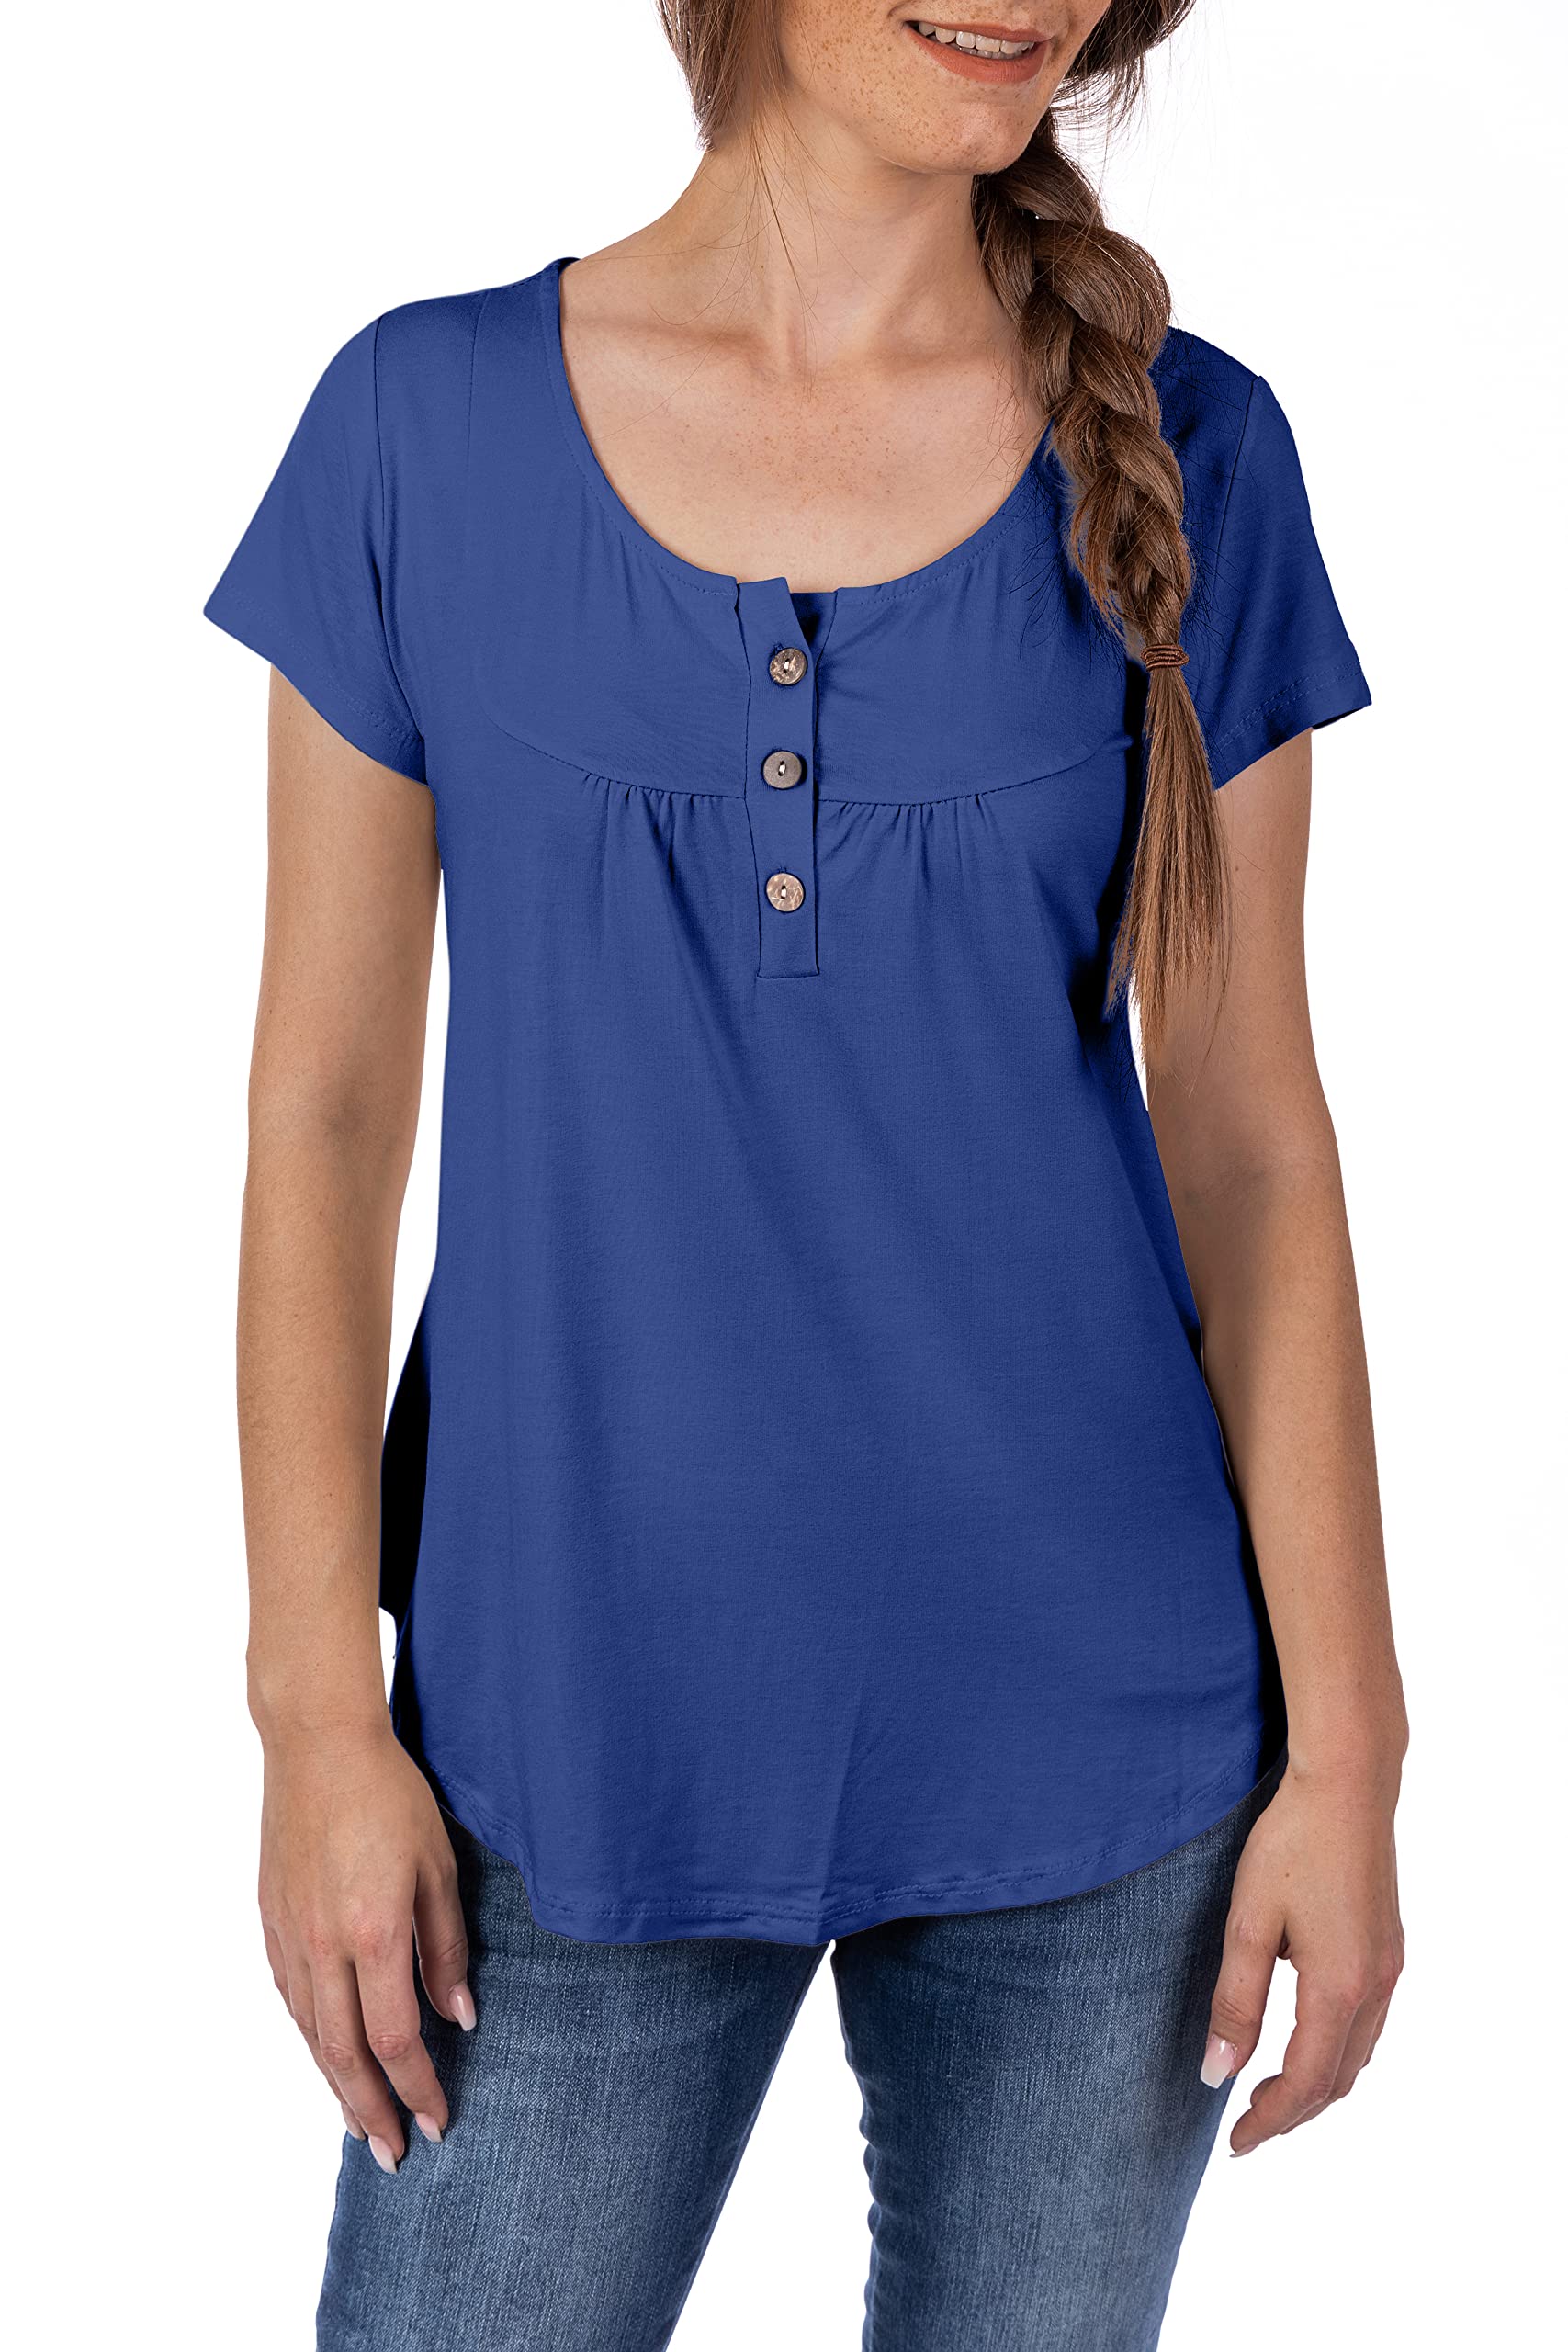 U&F Damen Basic Shirt | Umspieltes Dekollete in Rundhals mit Knöpfen | perfekte Passform, auch für Problemzonen | modischer eleganter Look | Blau Größe: XXL